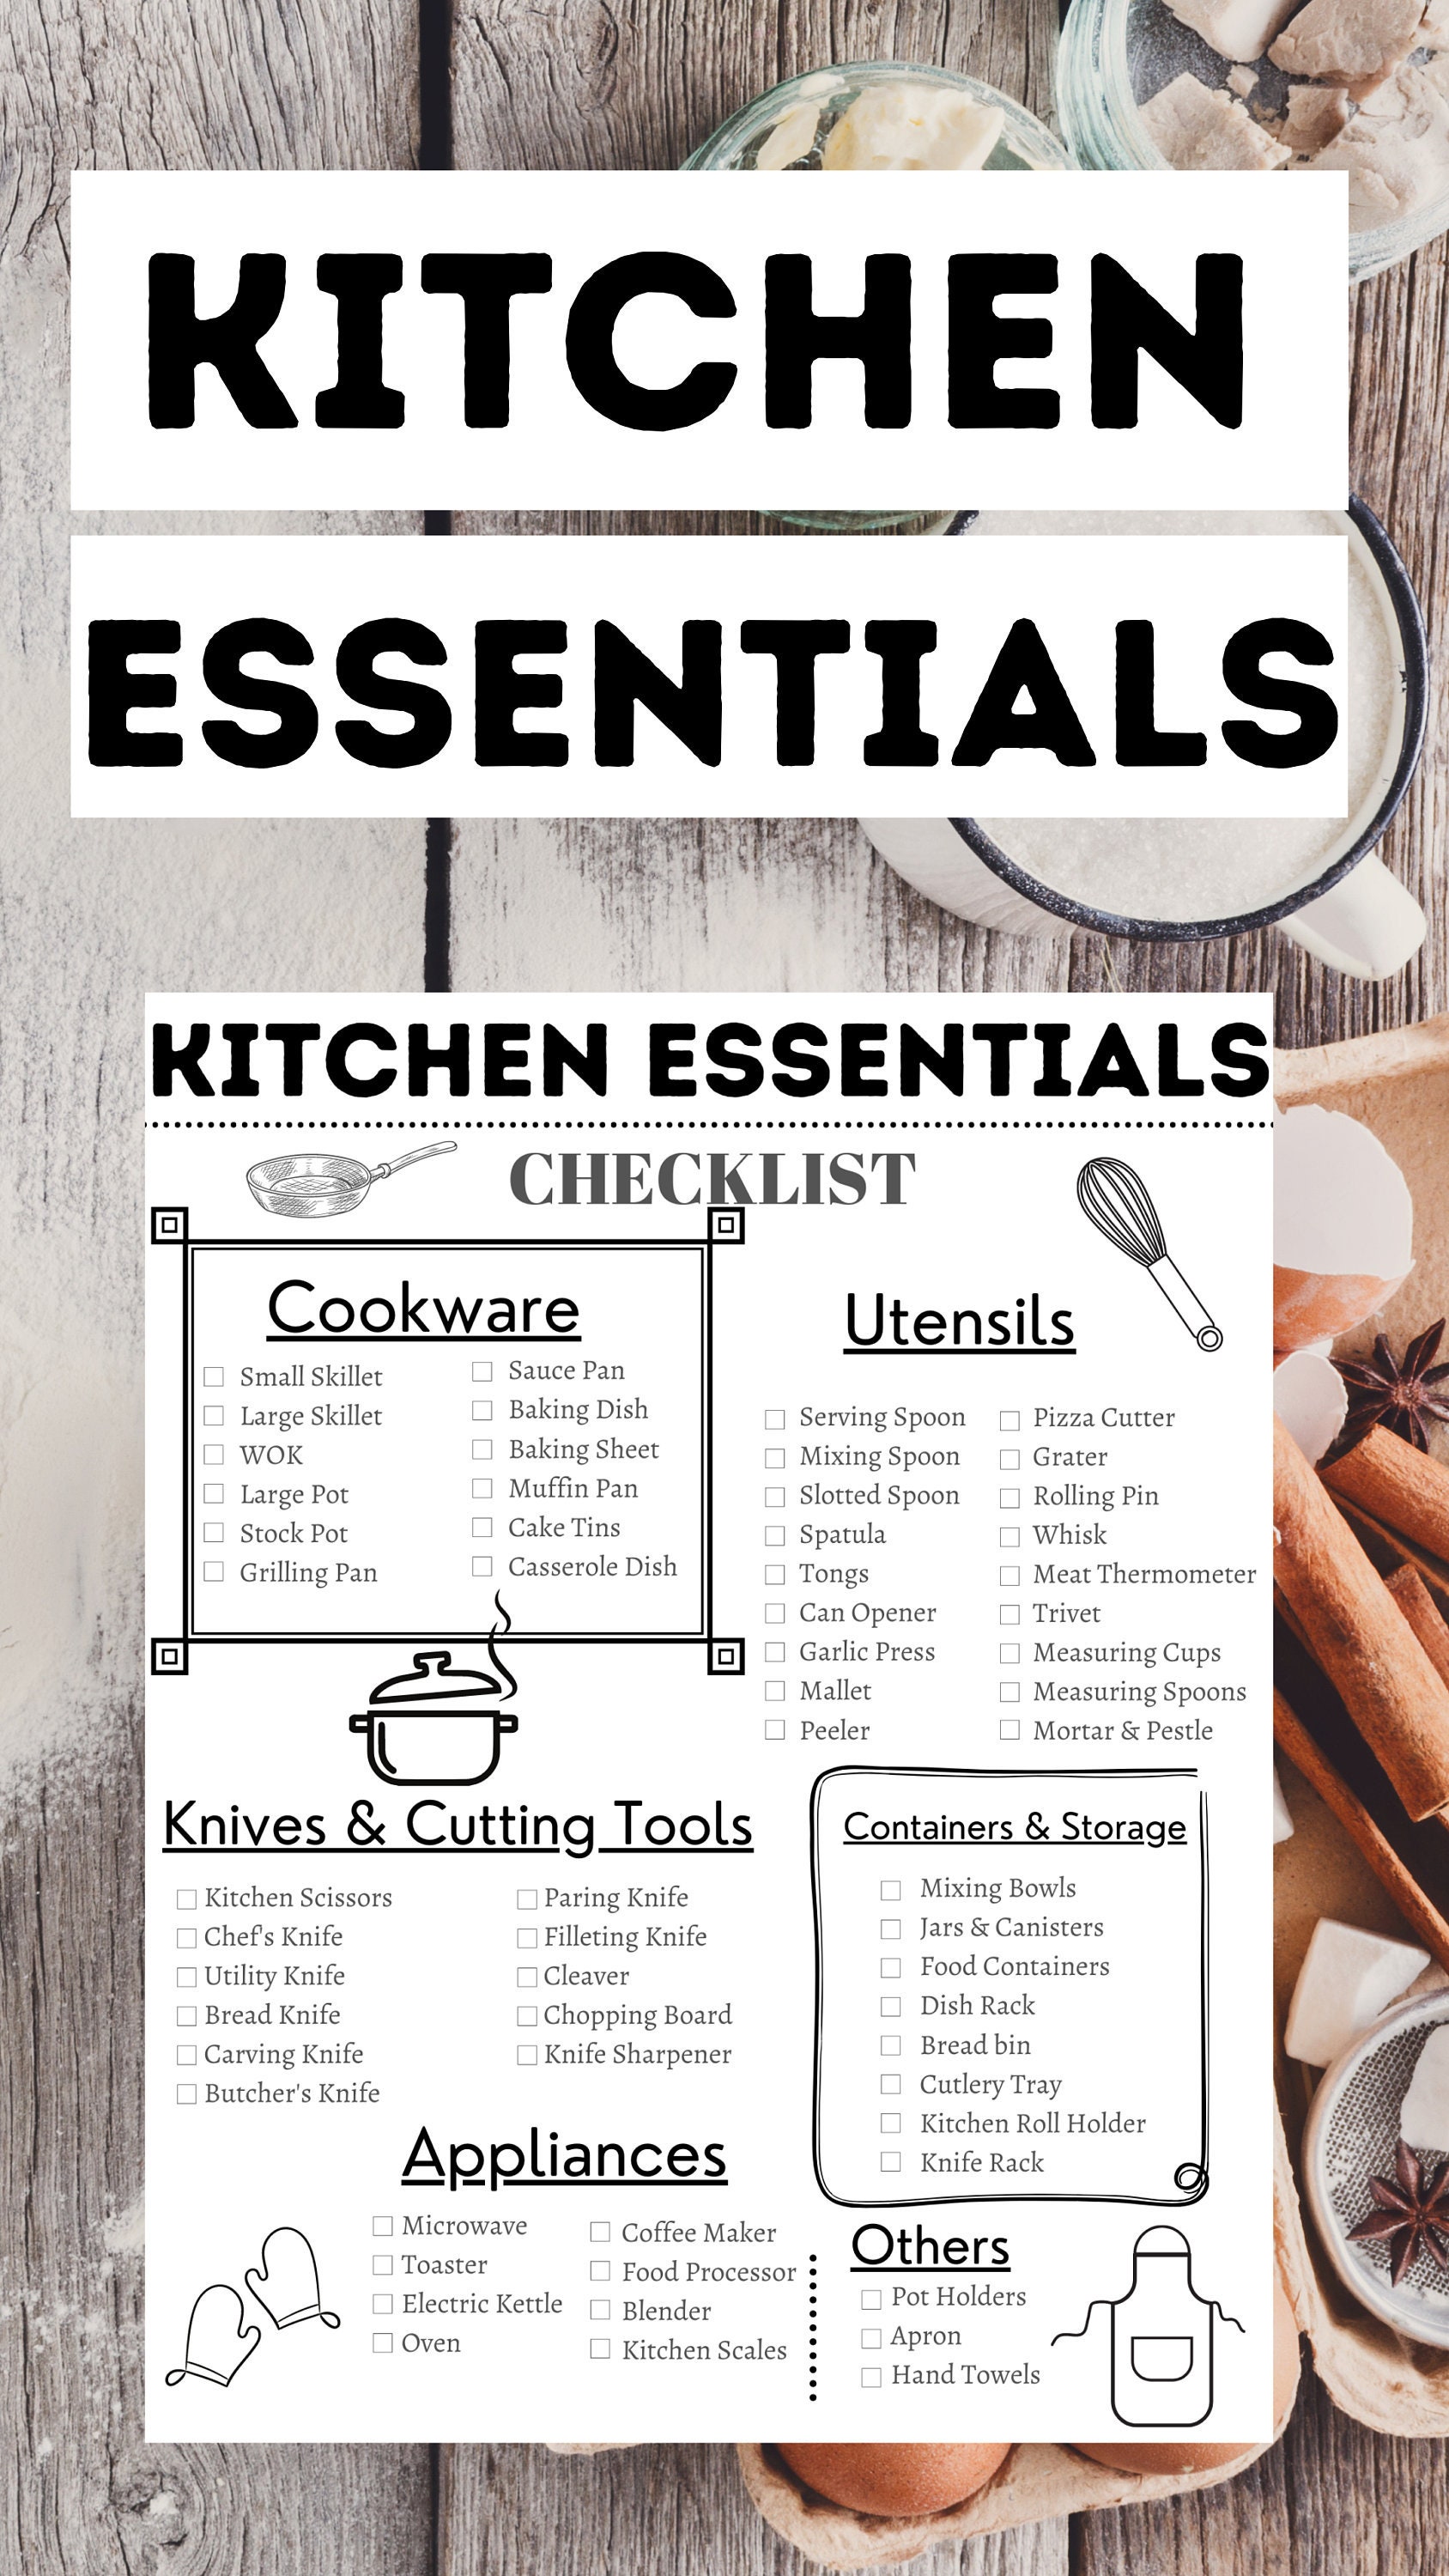 Free kitchen essentials checklist: 250 items you need for your kitchen  Kitchen  necessities list, Kitchen essentials checklist, Kitchen essentials list